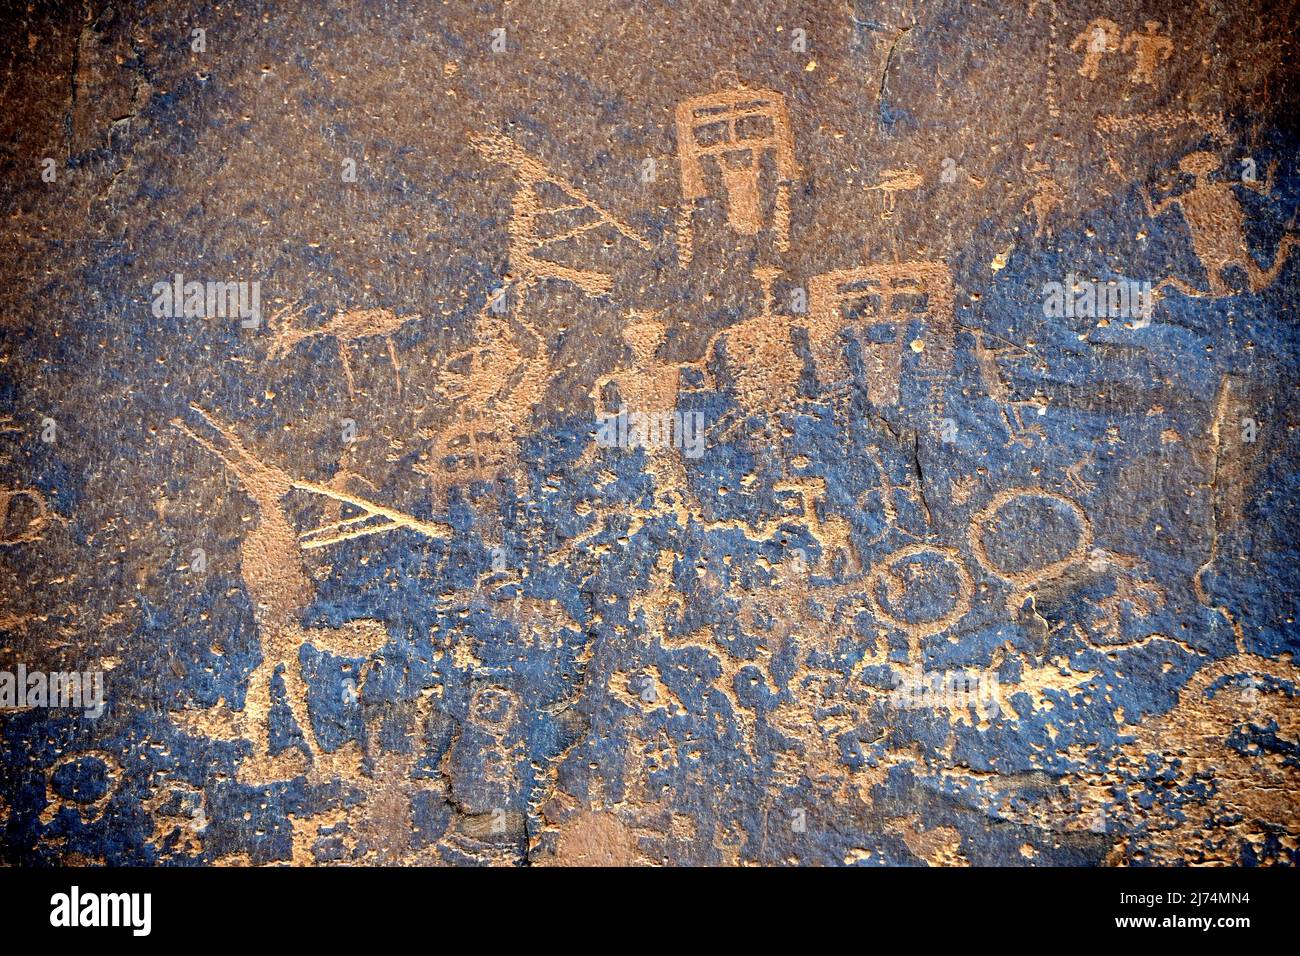 Peintures rupestres des Amérindiens, environ 3000 ans, Sand Island près de Bluff, États-Unis, Utah Banque D'Images